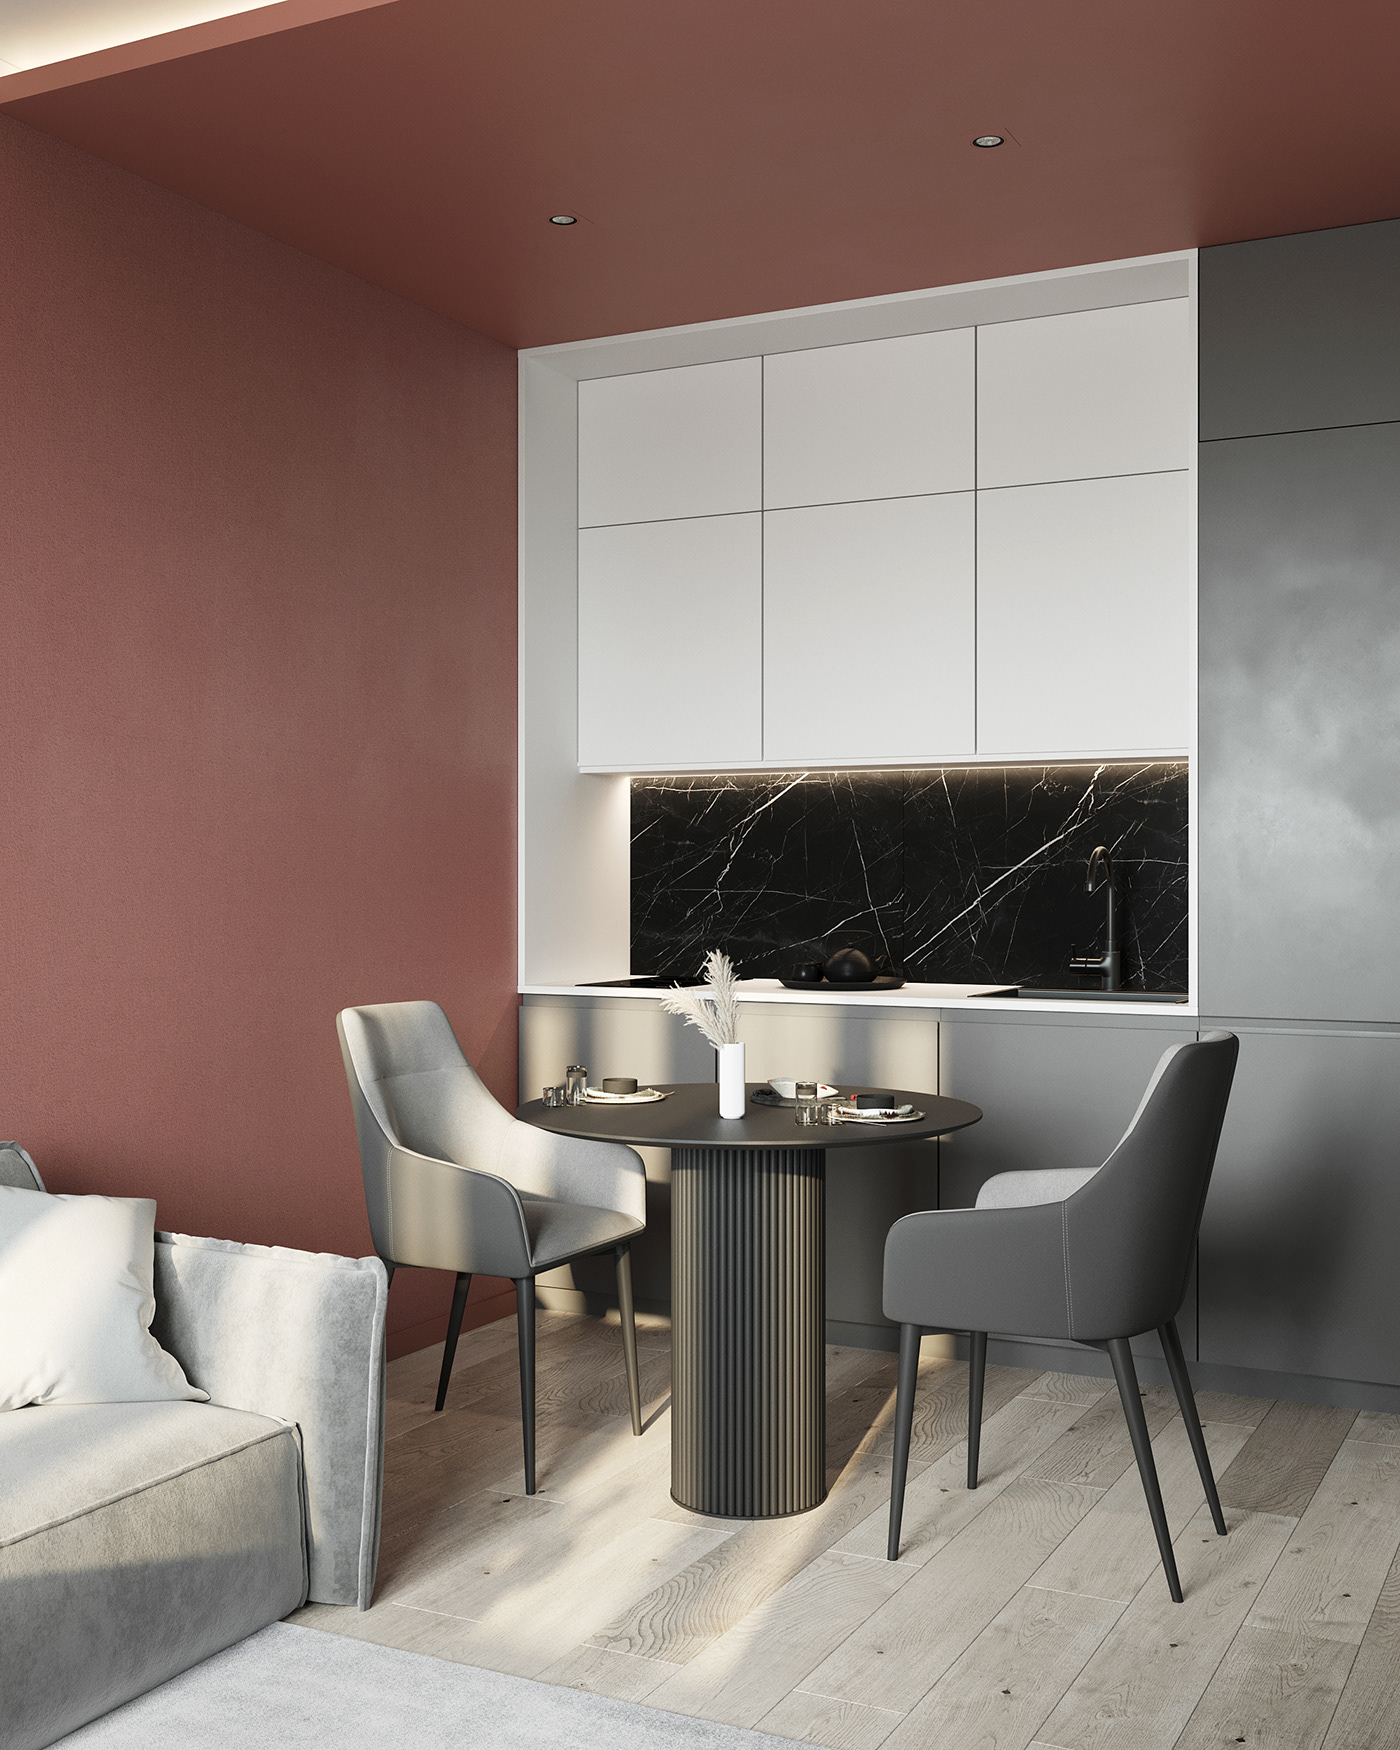 3ds max archviz bedroom design corona Interior interior design  kitchen design дизайн интерьера